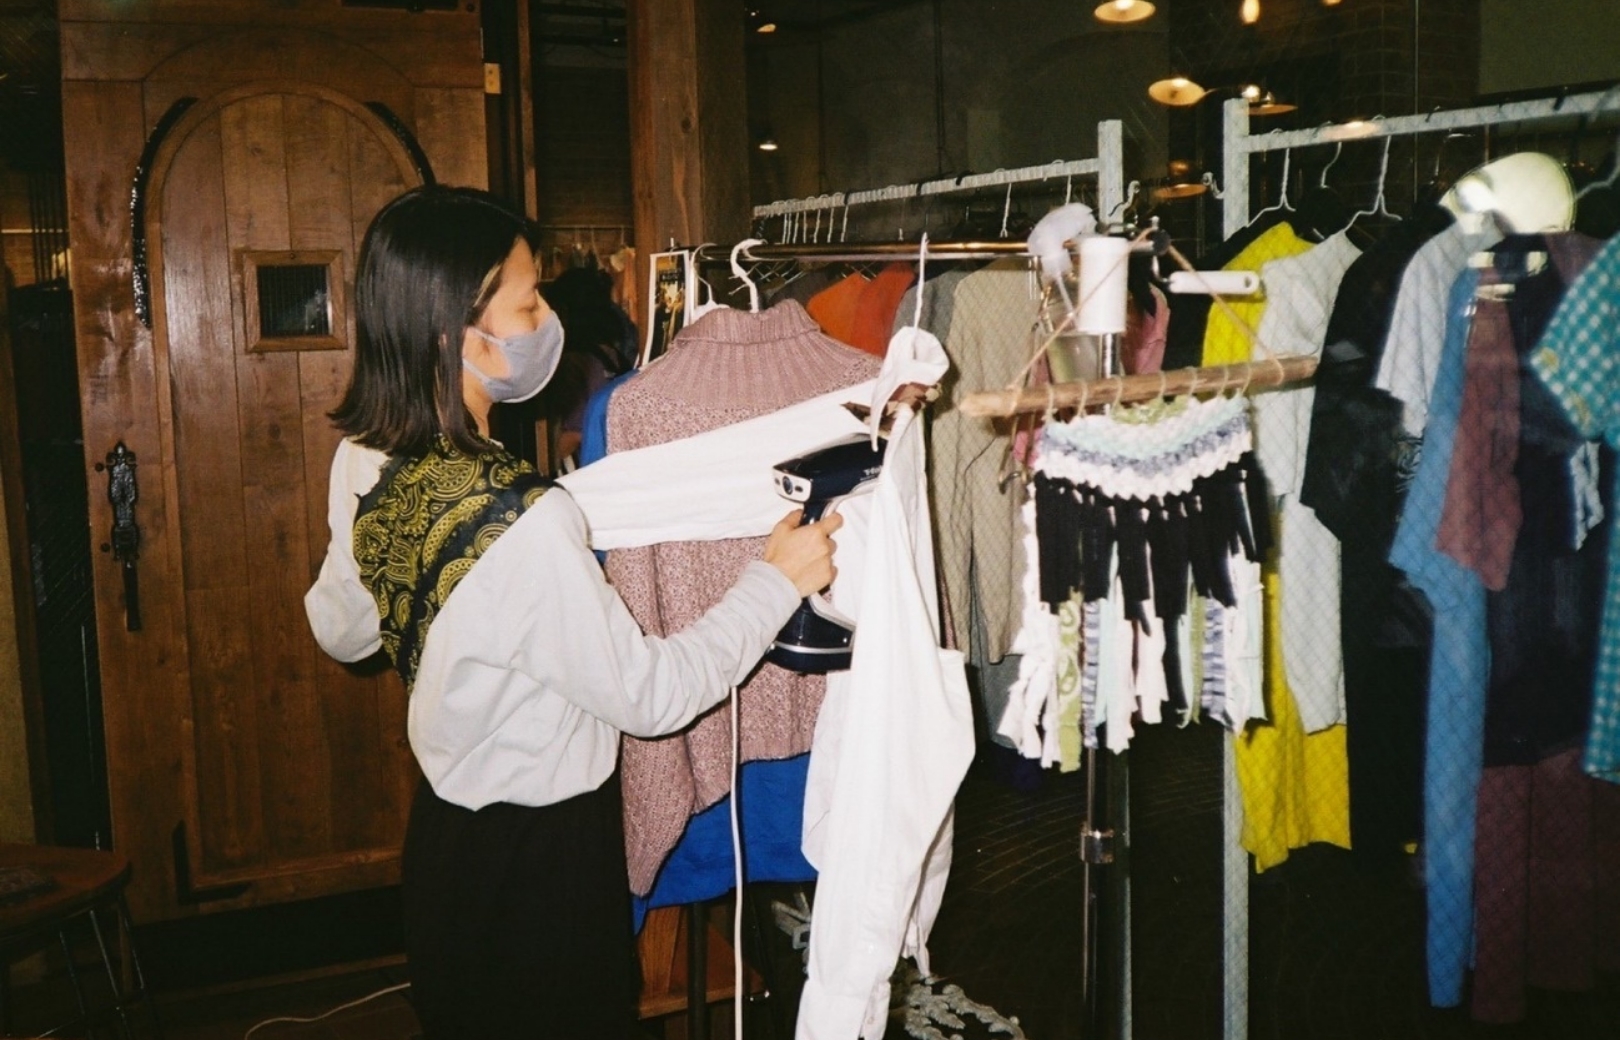 沙友里さんは店長として店に出て、着こなしの相談にものる。これまで循環させた服は合わせて2トンを超えるという。